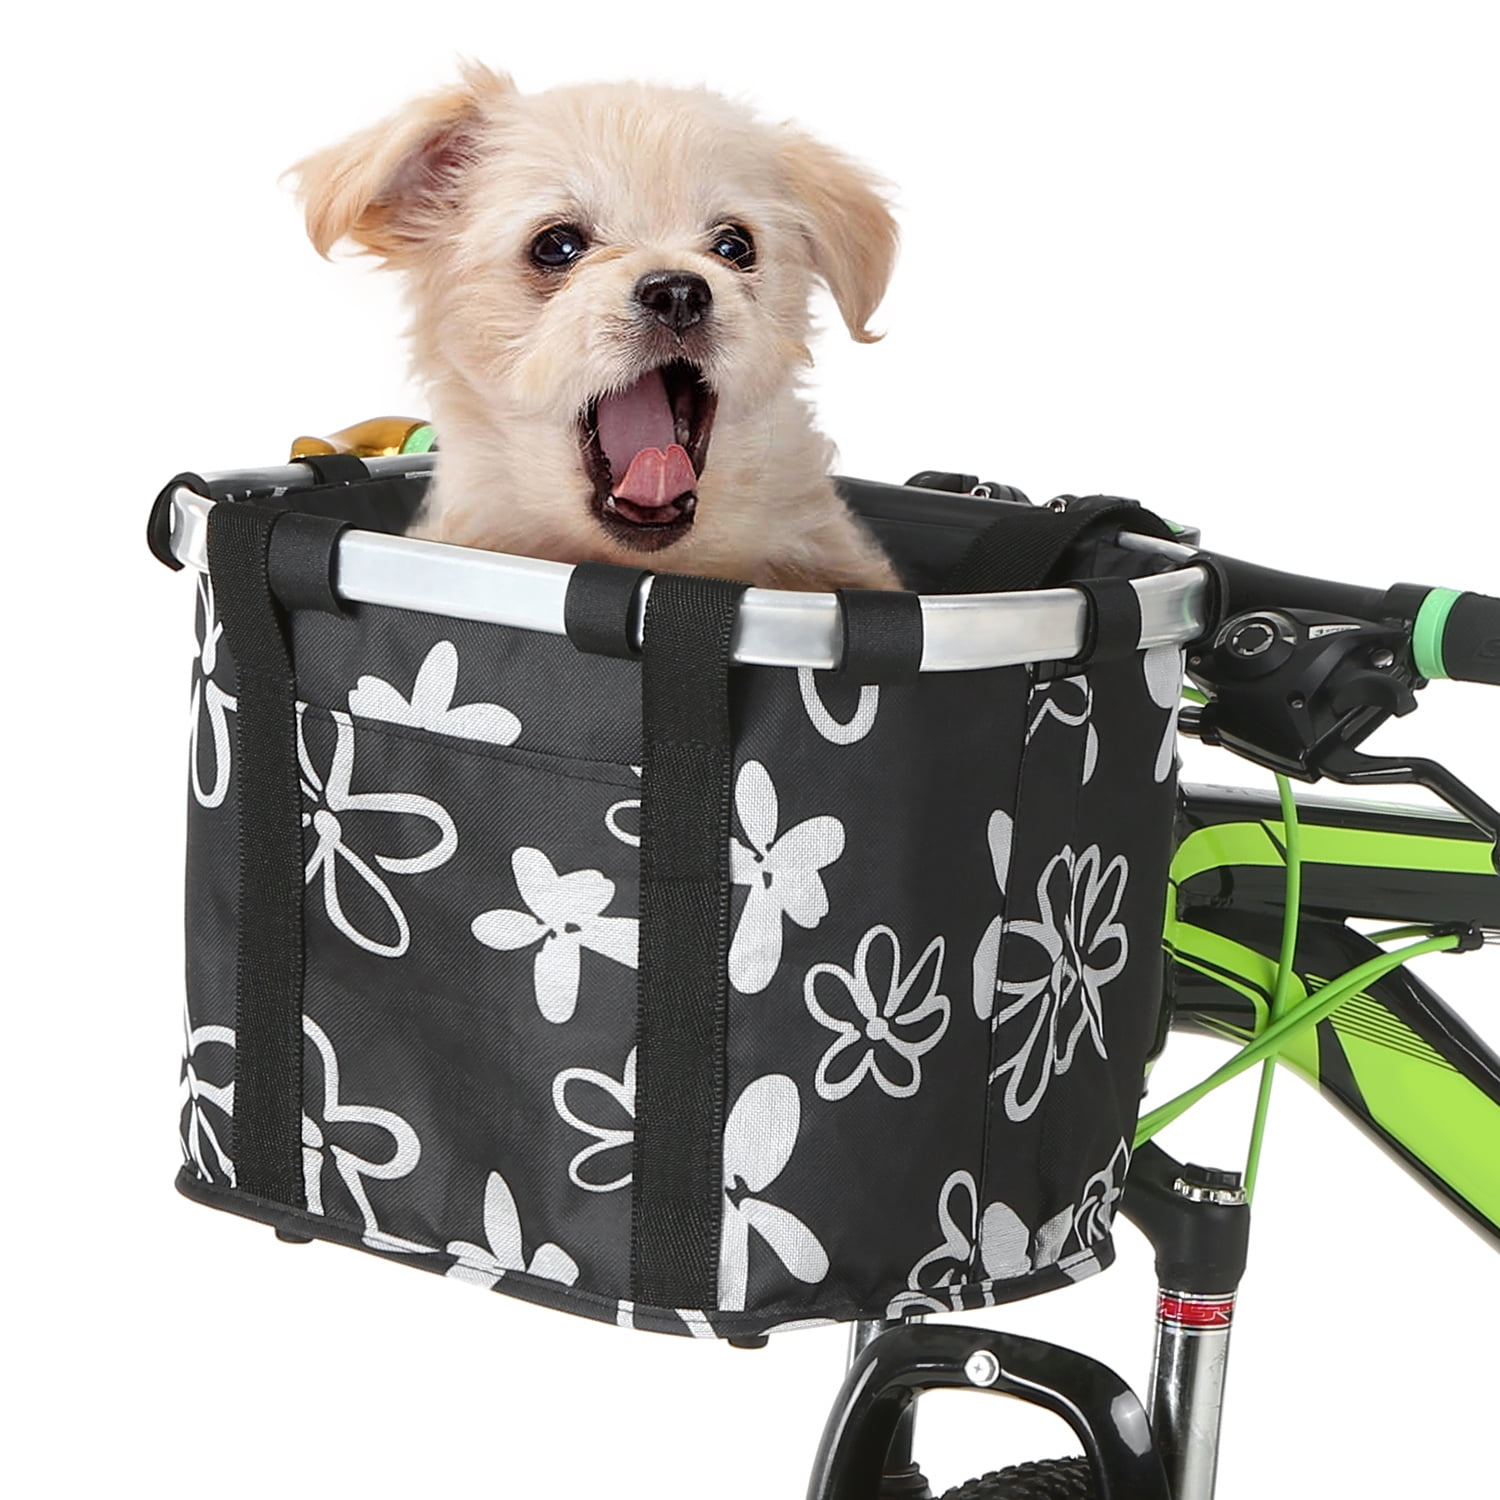 Folding Bicycle Basket Small Pet Cat Dog Carrier Front Bike Handlebar Basket Bag